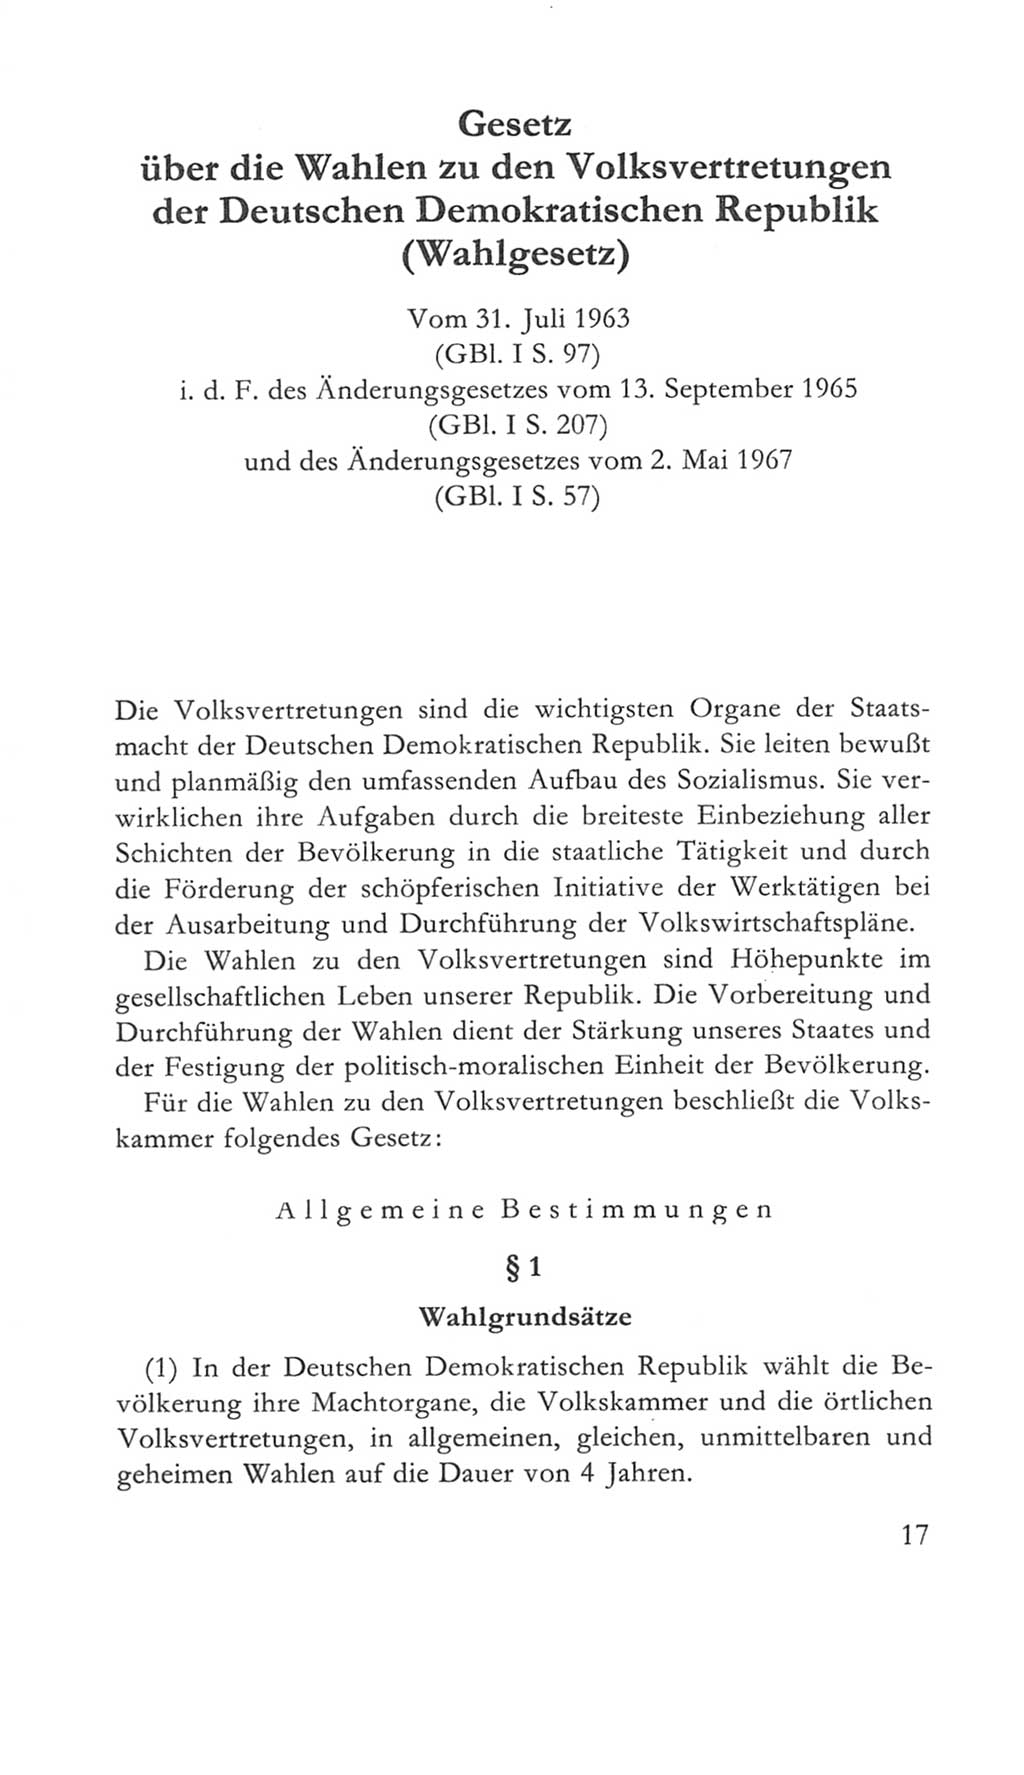 Volkskammer (VK) der Deutschen Demokratischen Republik (DDR) 5. Wahlperiode 1967-1971, Seite 17 (VK. DDR 5. WP. 1967-1971, S. 17)